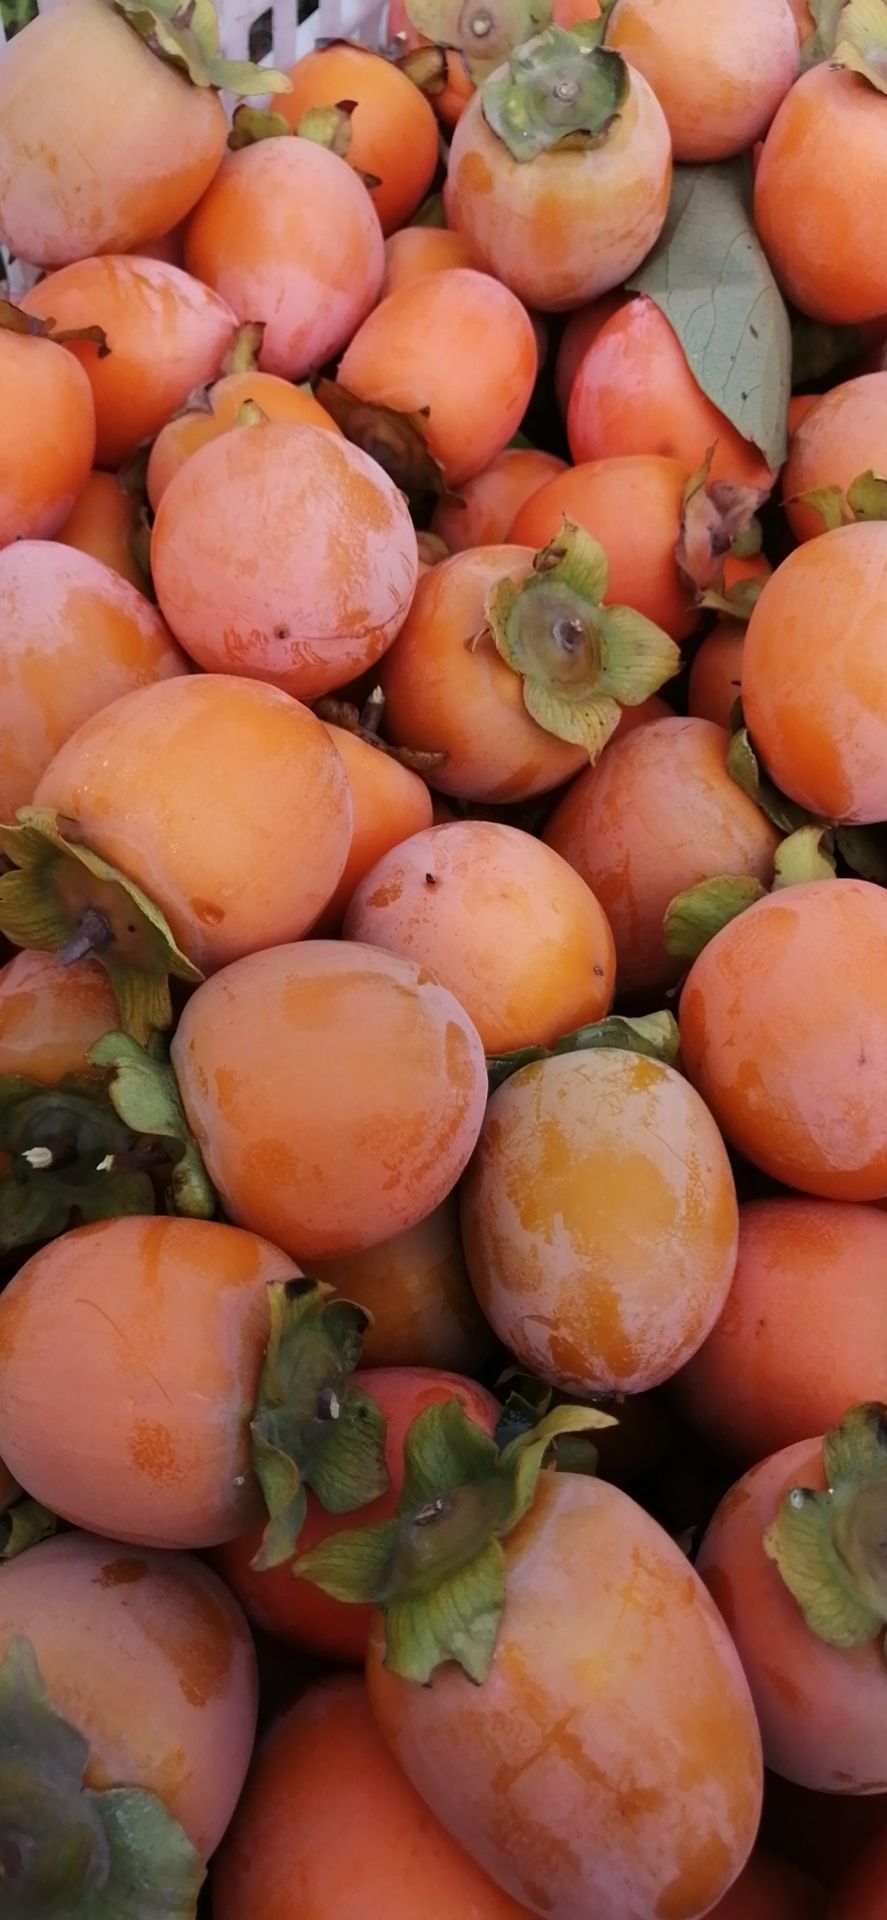 胭脂红柿子 河南灵宝阳平镇柿子正在有货,品种有胭脂红,吊红,晚熟吊红